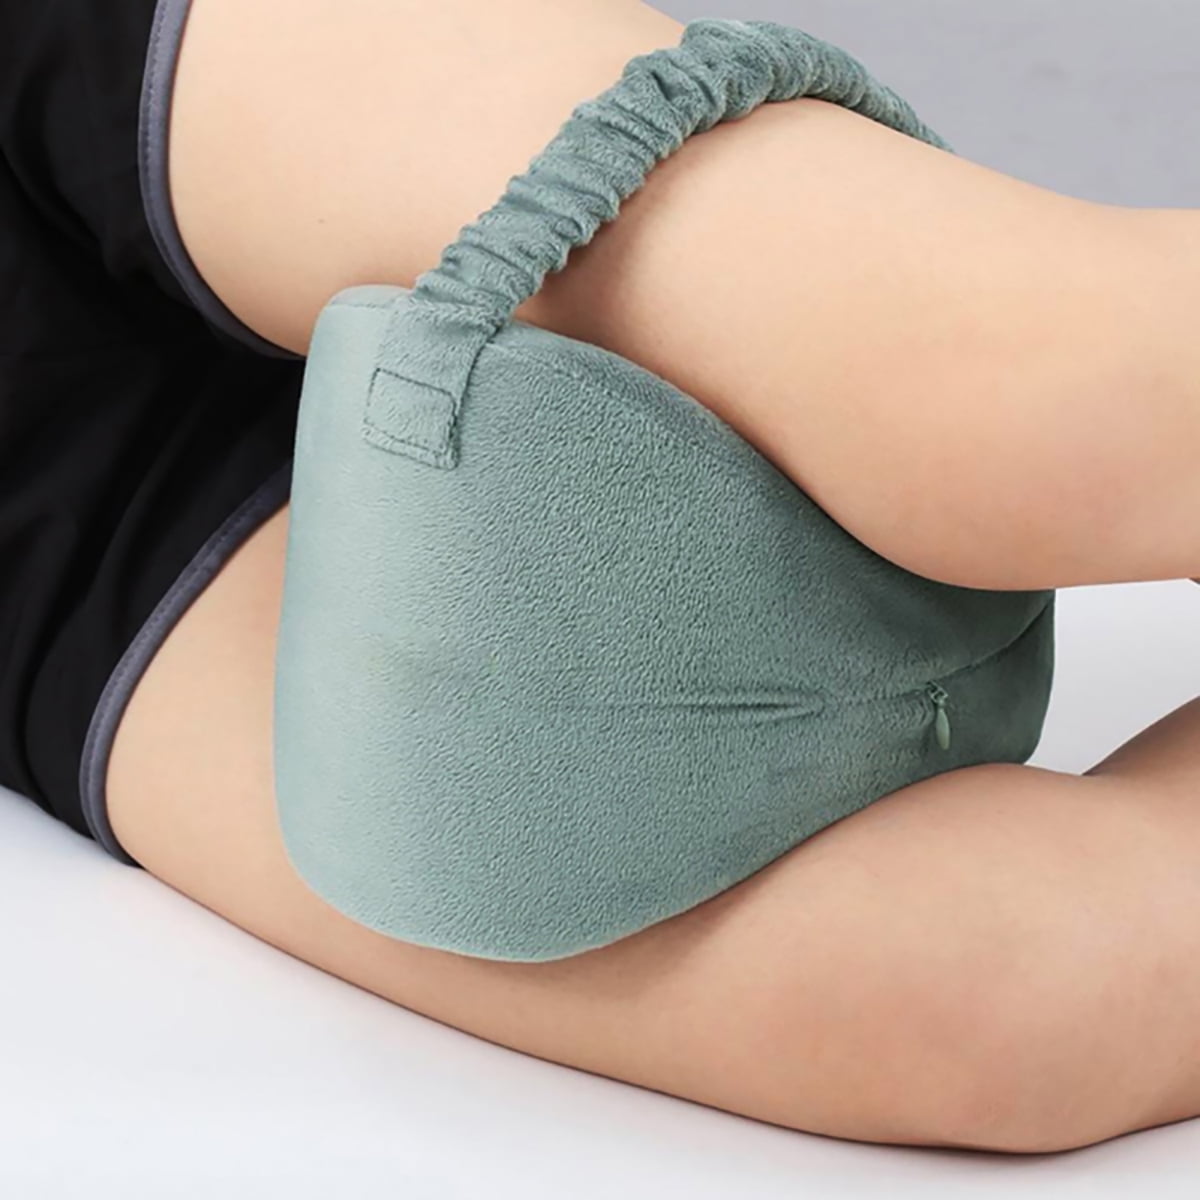 Leg Knee Foam Pillow Sleep Pads Between Side Sleepers Rest Orthopaedic Back Pain 